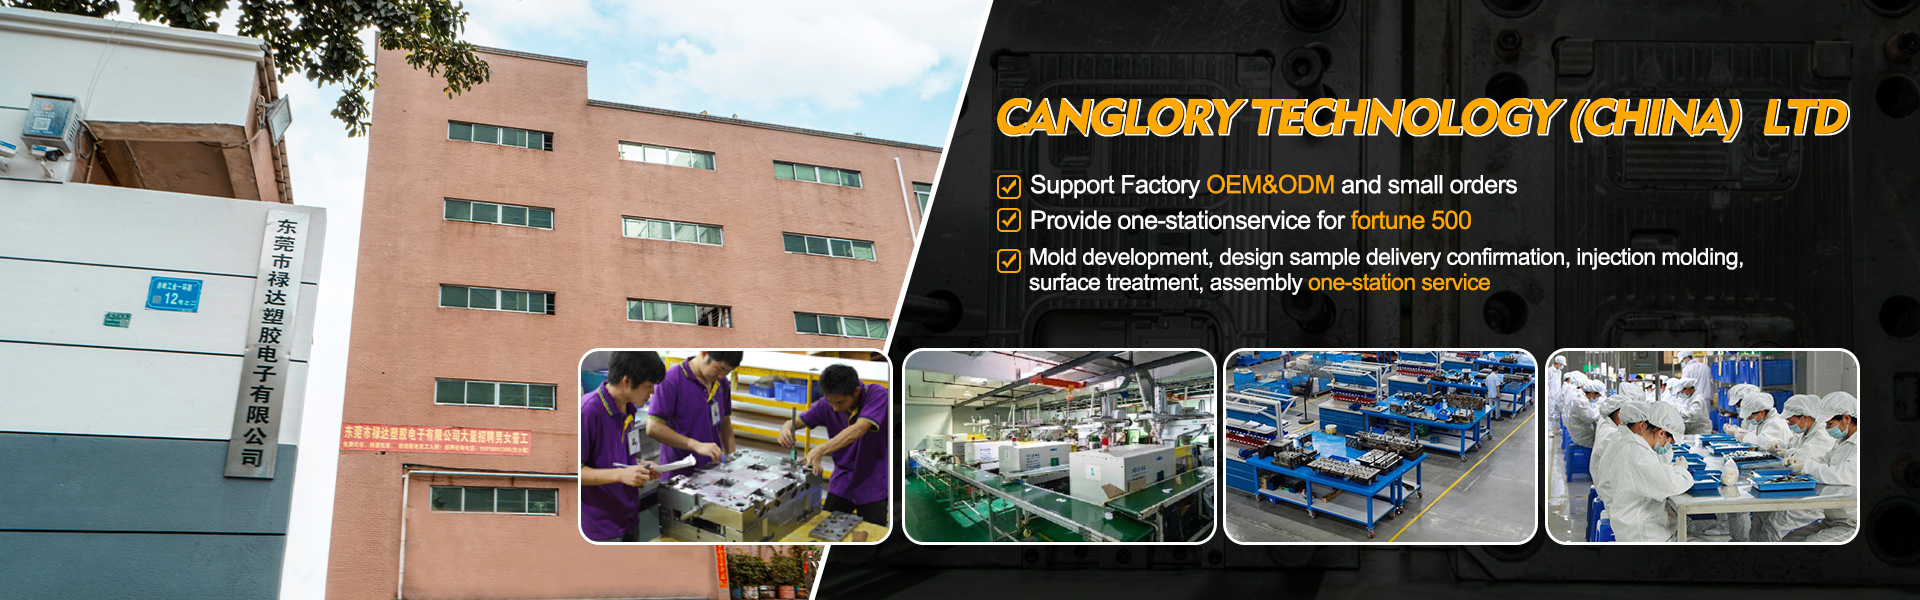 itthon - öntés, injekció, eredeti berendezésgyártó|Canglory Technology (China) Ltd